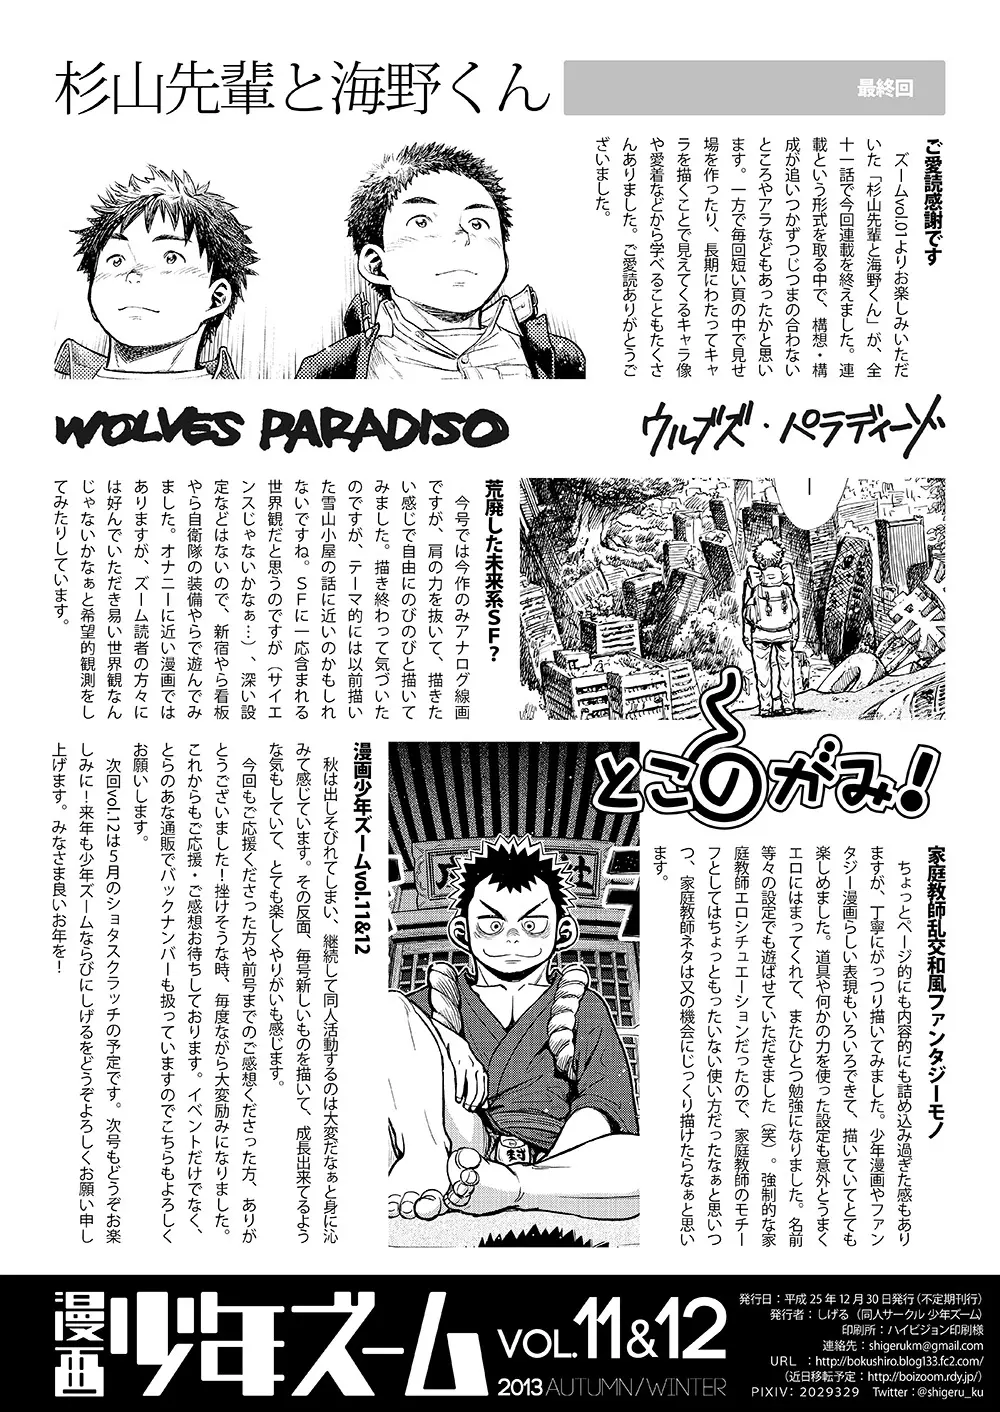 漫画少年ズーム VOL.11 & 12 58ページ